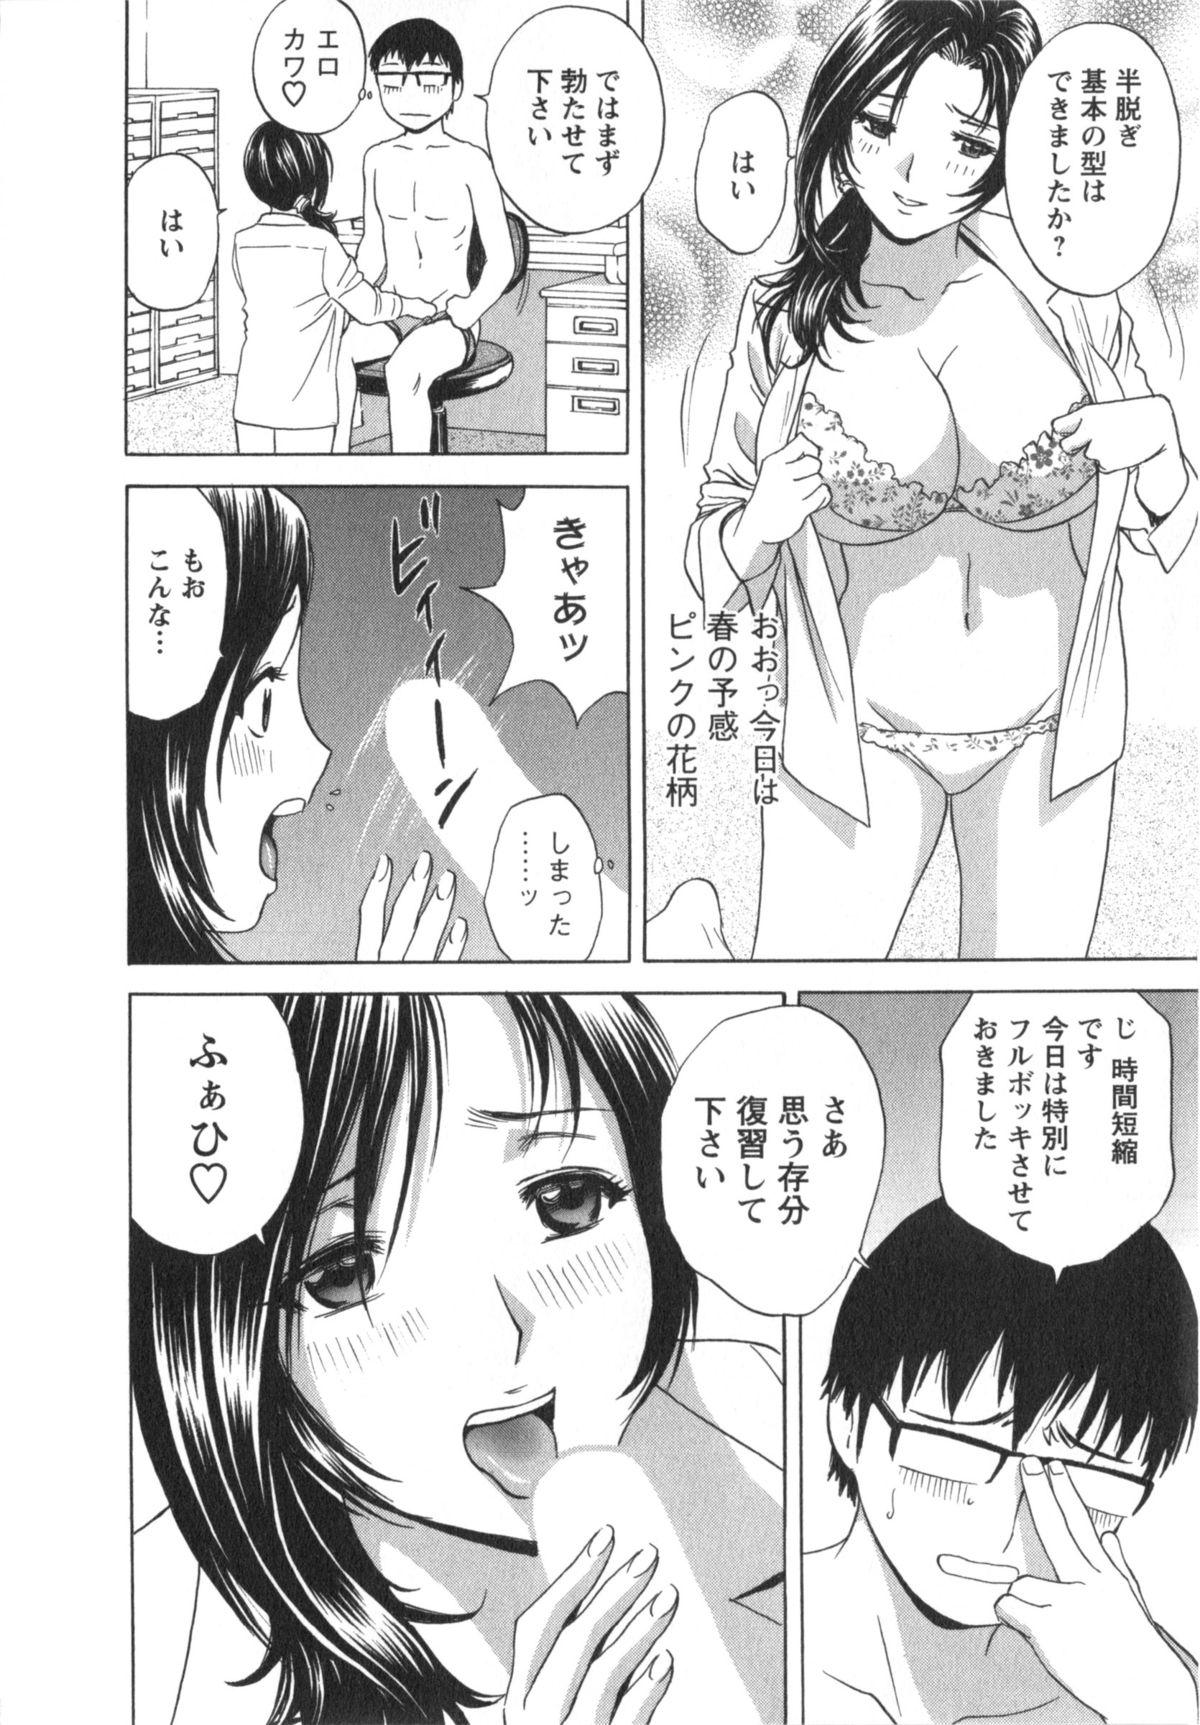 Manga no youna Hitozuma to no Hibi - Days with Married Women such as Comics. 50